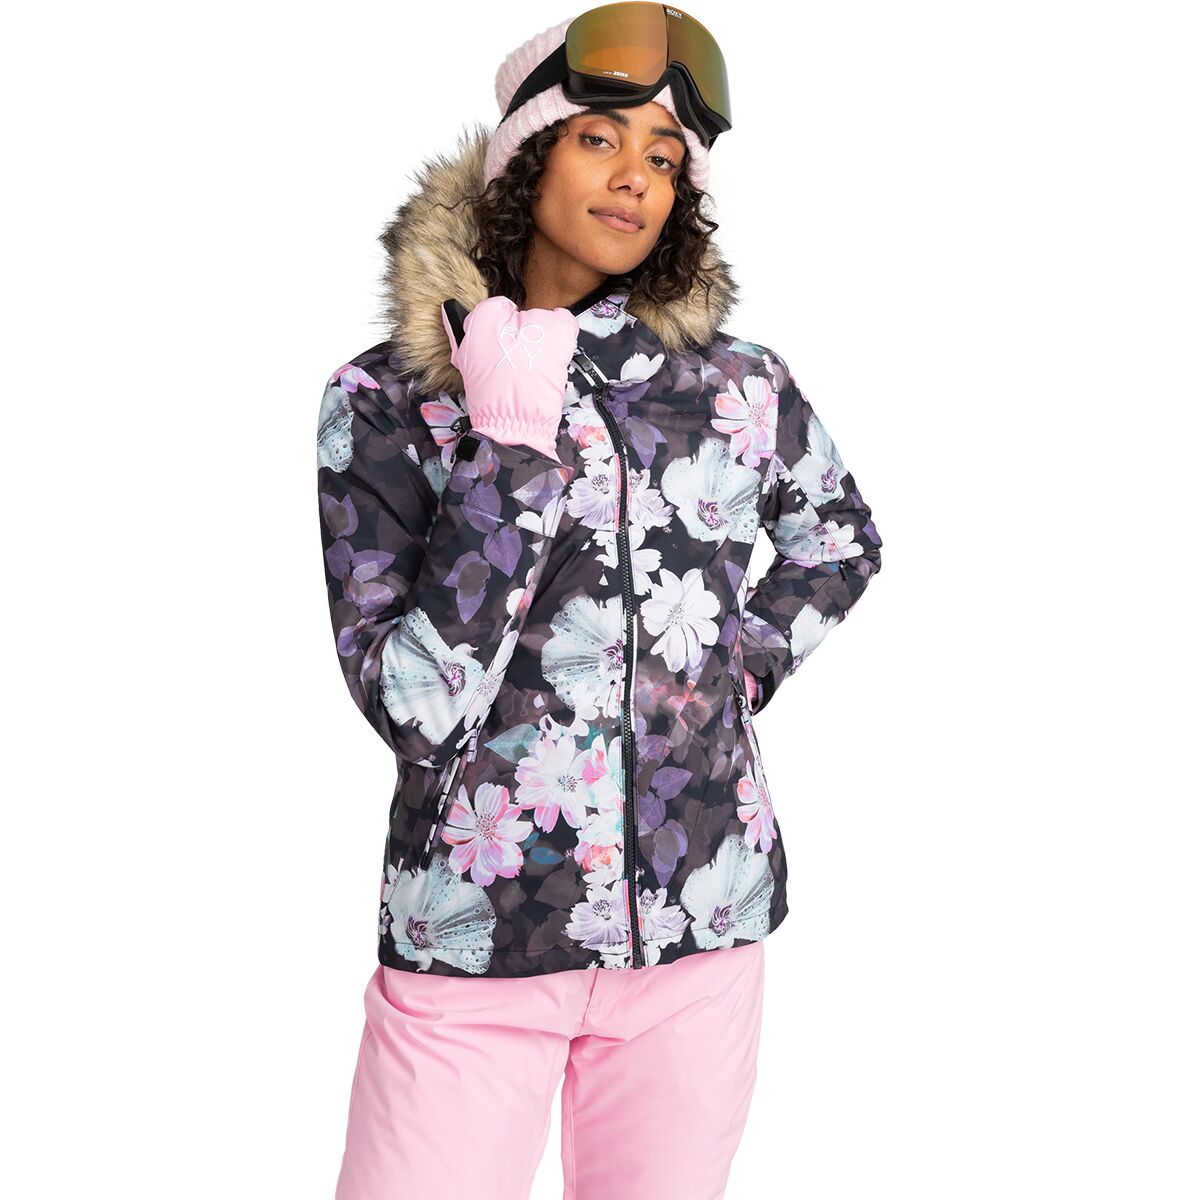 Roxy Jet Ski Snow Jacket - Women's True Black/Blurry Flower